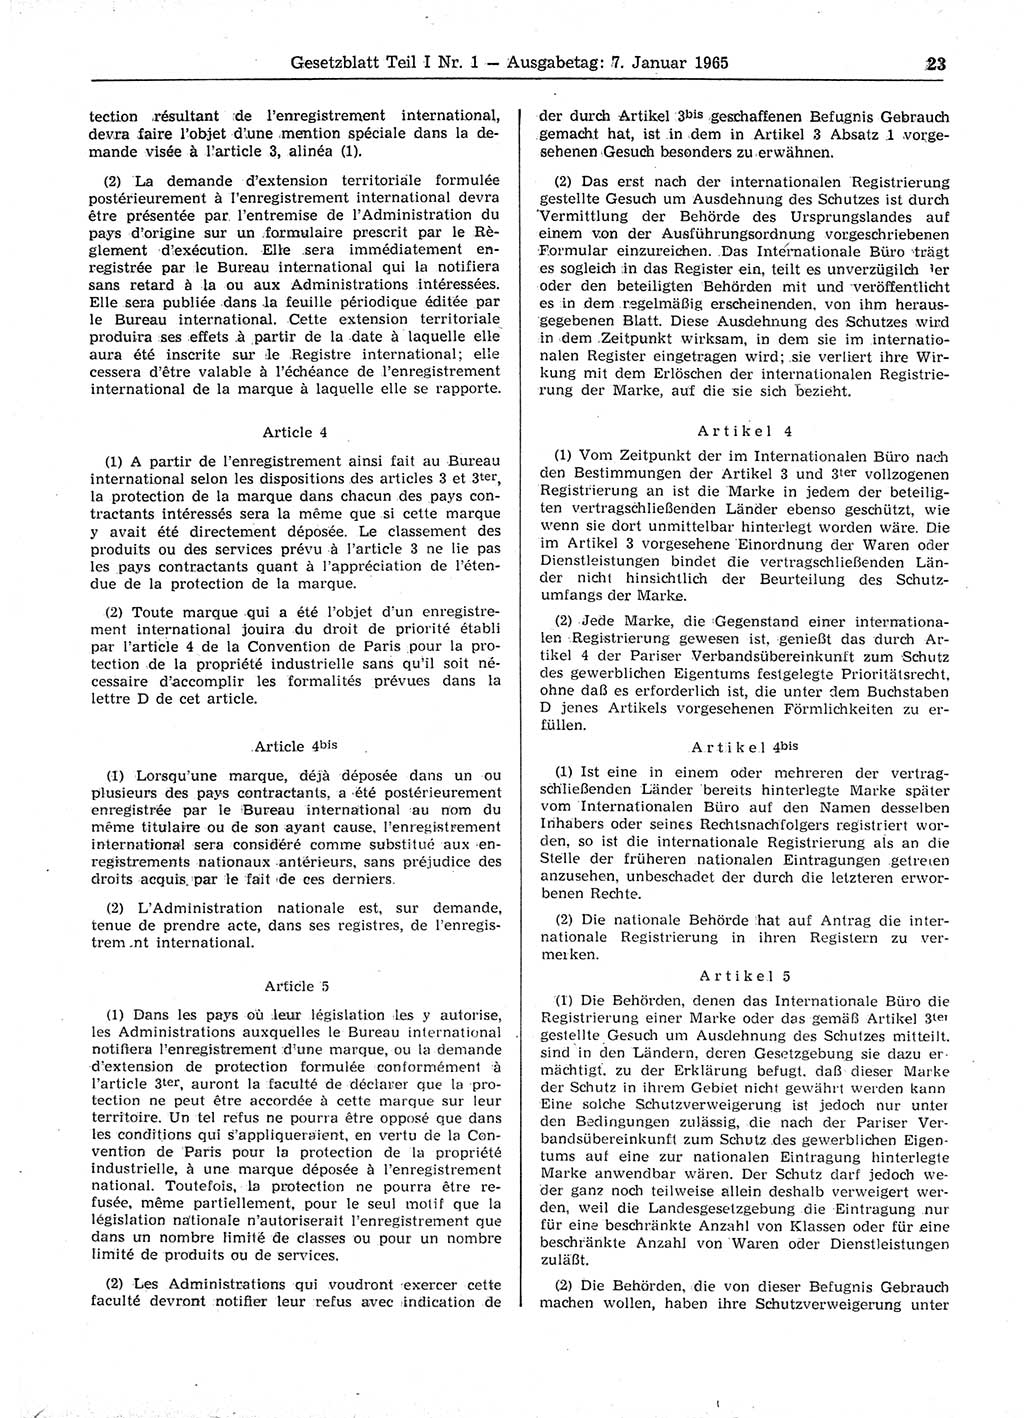 Gesetzblatt (GBl.) der Deutschen Demokratischen Republik (DDR) Teil Ⅰ 1965, Seite 23 (GBl. DDR Ⅰ 1965, S. 23)